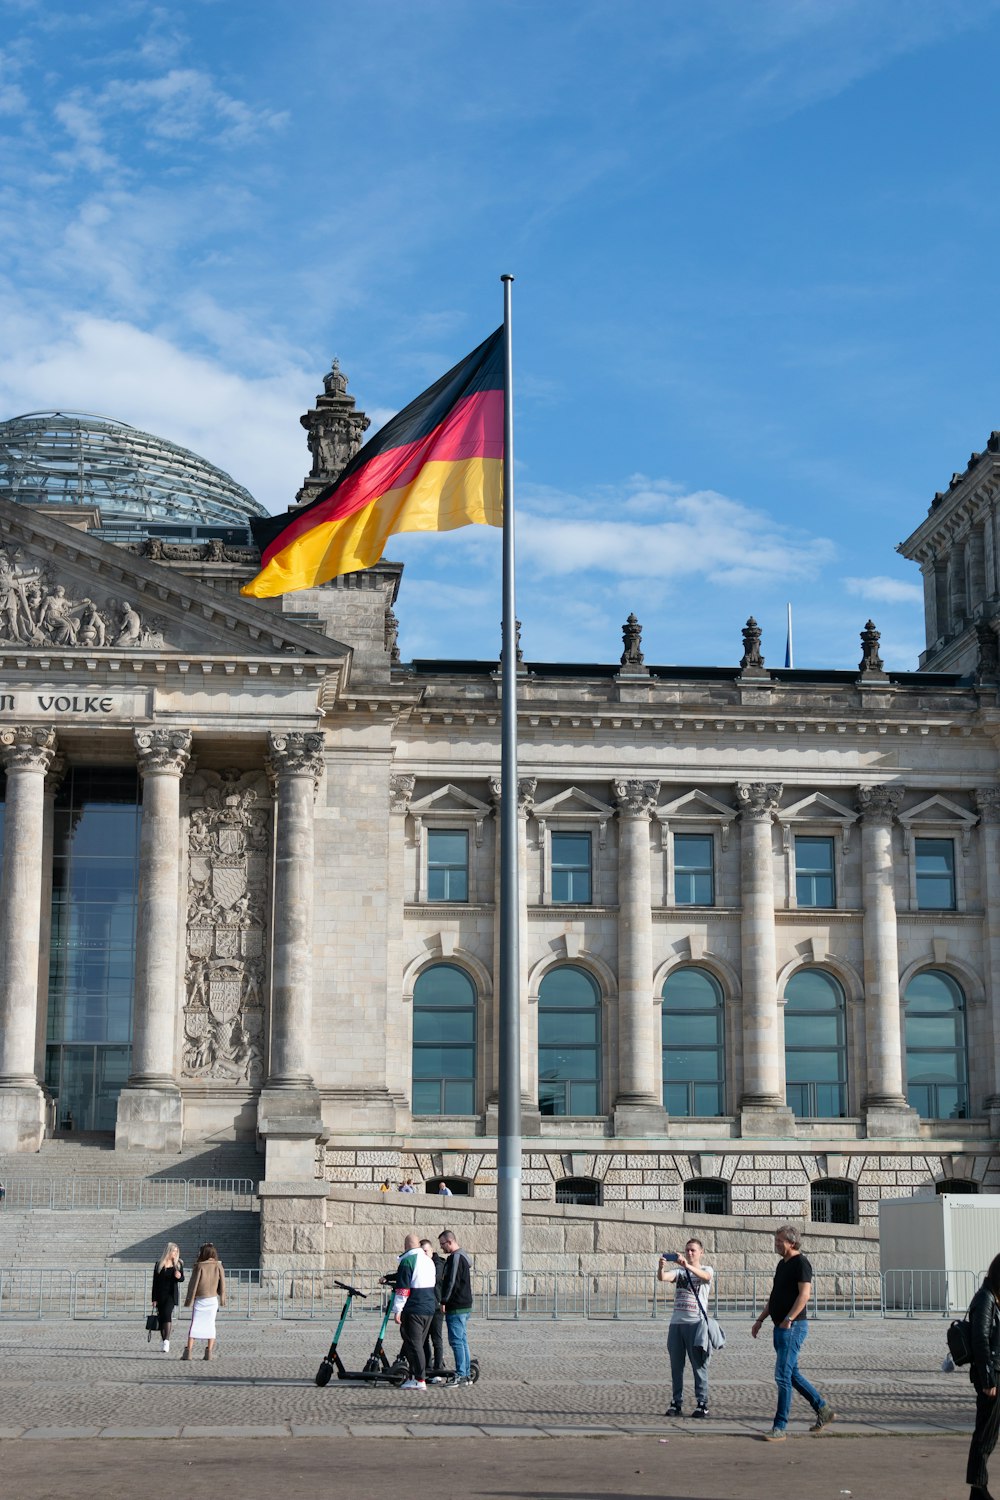 gente caminando al lado del edificio con la bandera ondeando de Alemania en el mástil